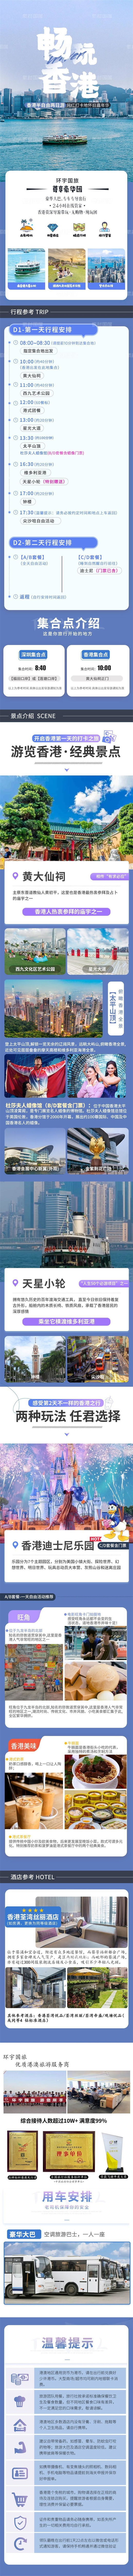 畅玩香港旅游电商详情页